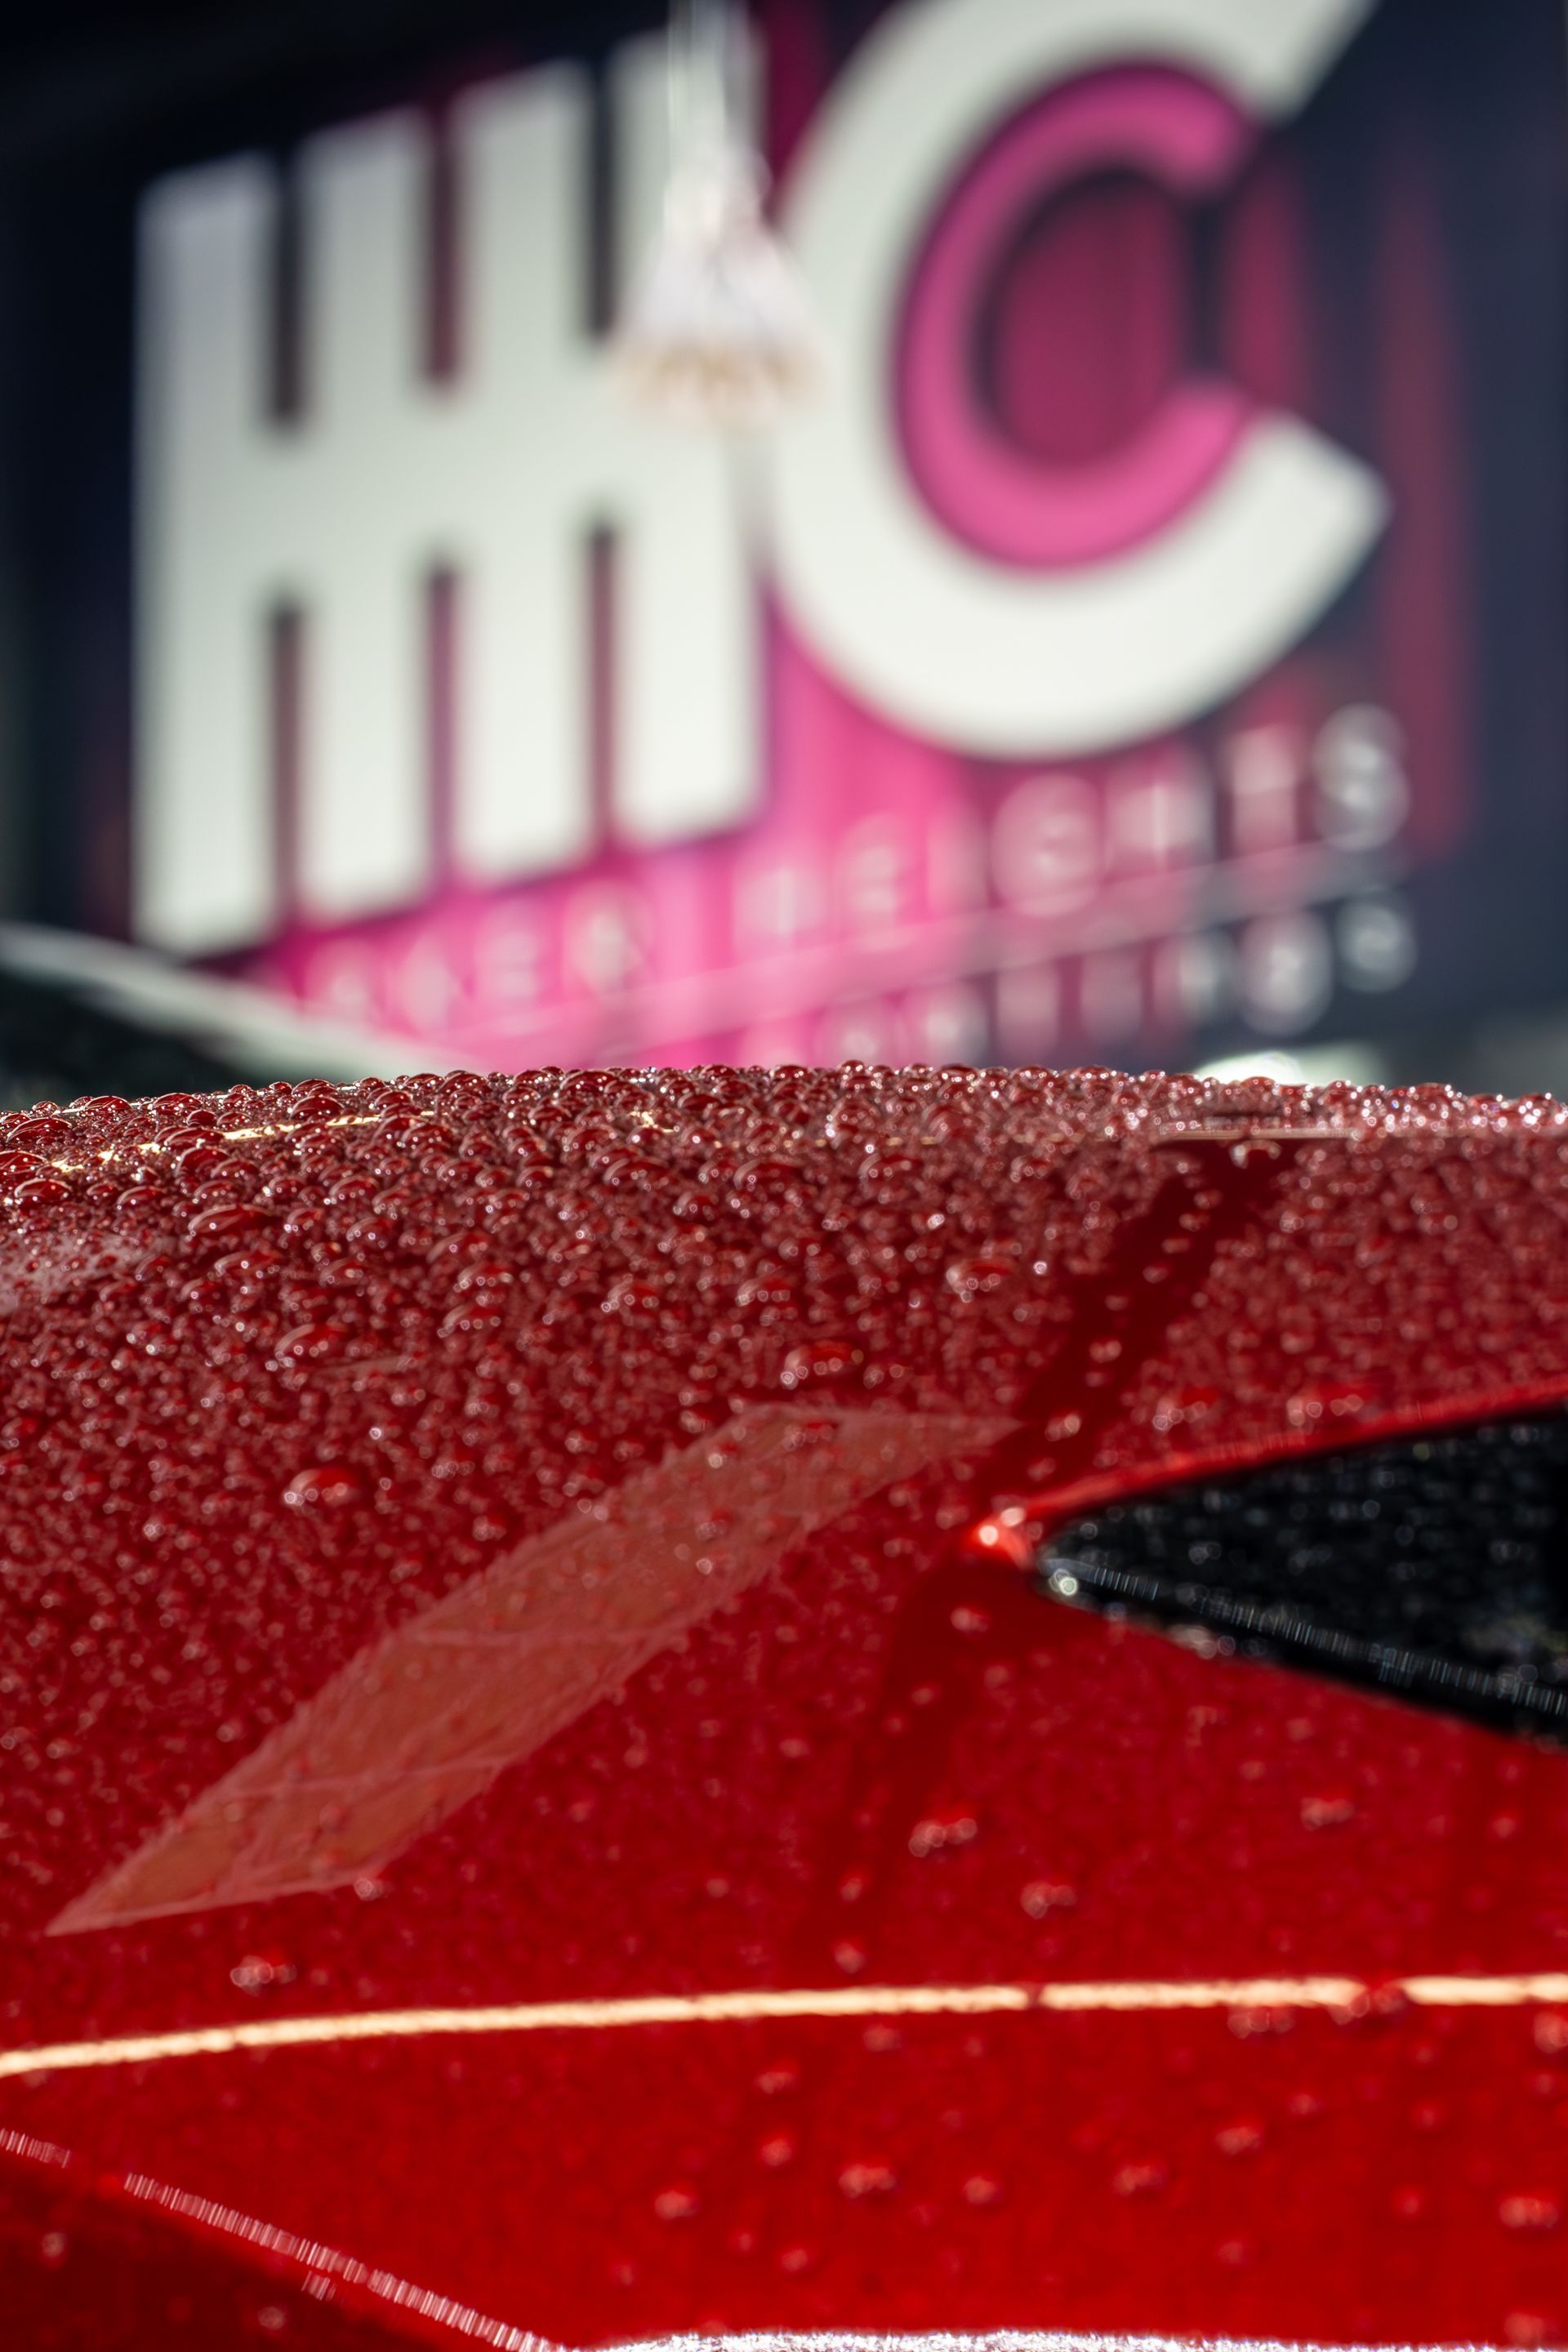 A close up of a red car with a hwc logo in the background